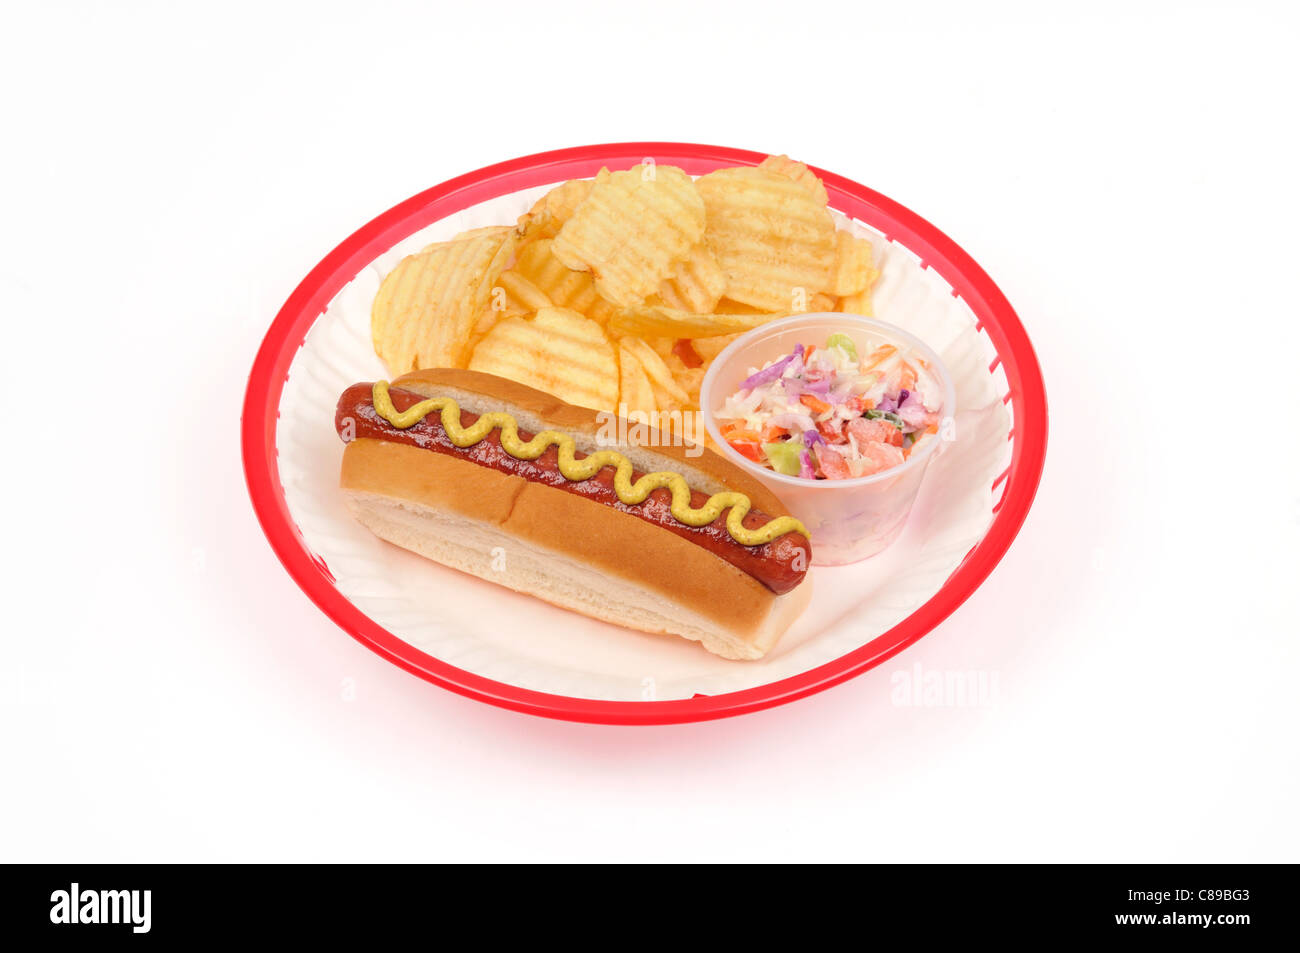 Würstchen mit Senf, Chips oder Pommes frites und Krautsalat auf weißem Papier Teller in rot Kunststoff Warenkorb auf weißem Hintergrund Ausschnitt. Stockfoto